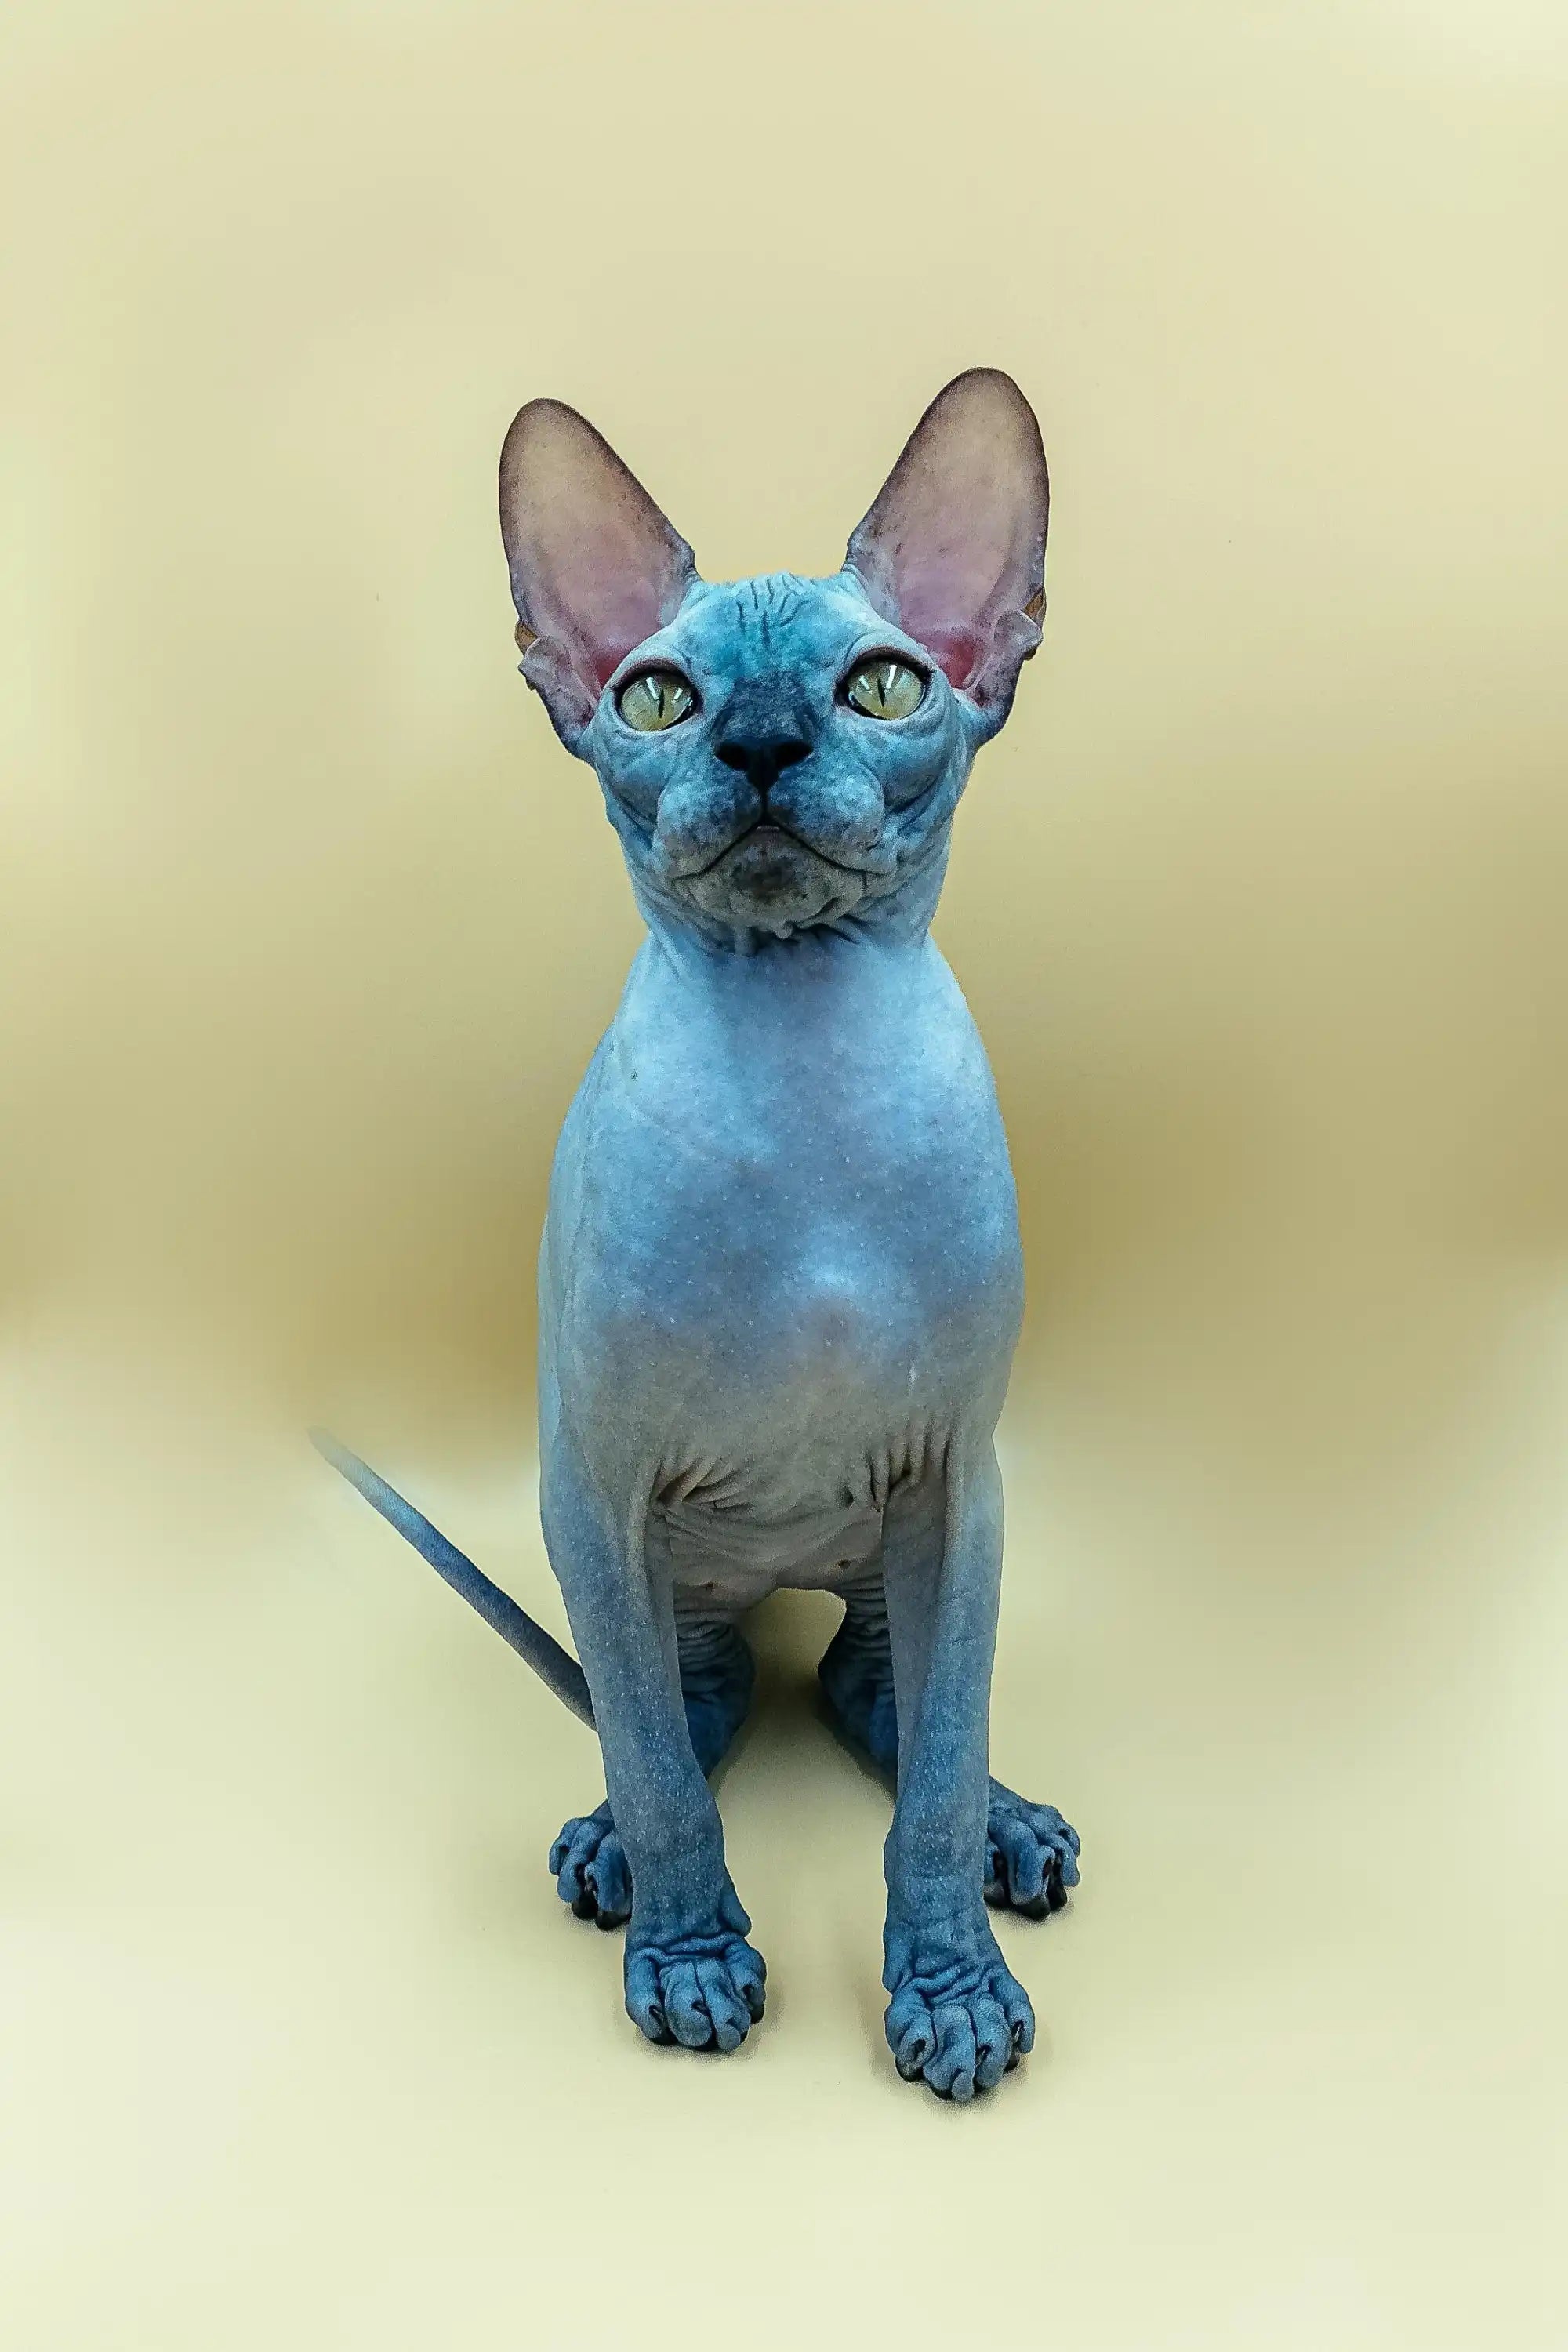 Sphynx Cats for Sale | Kittens For Gary| Kitten